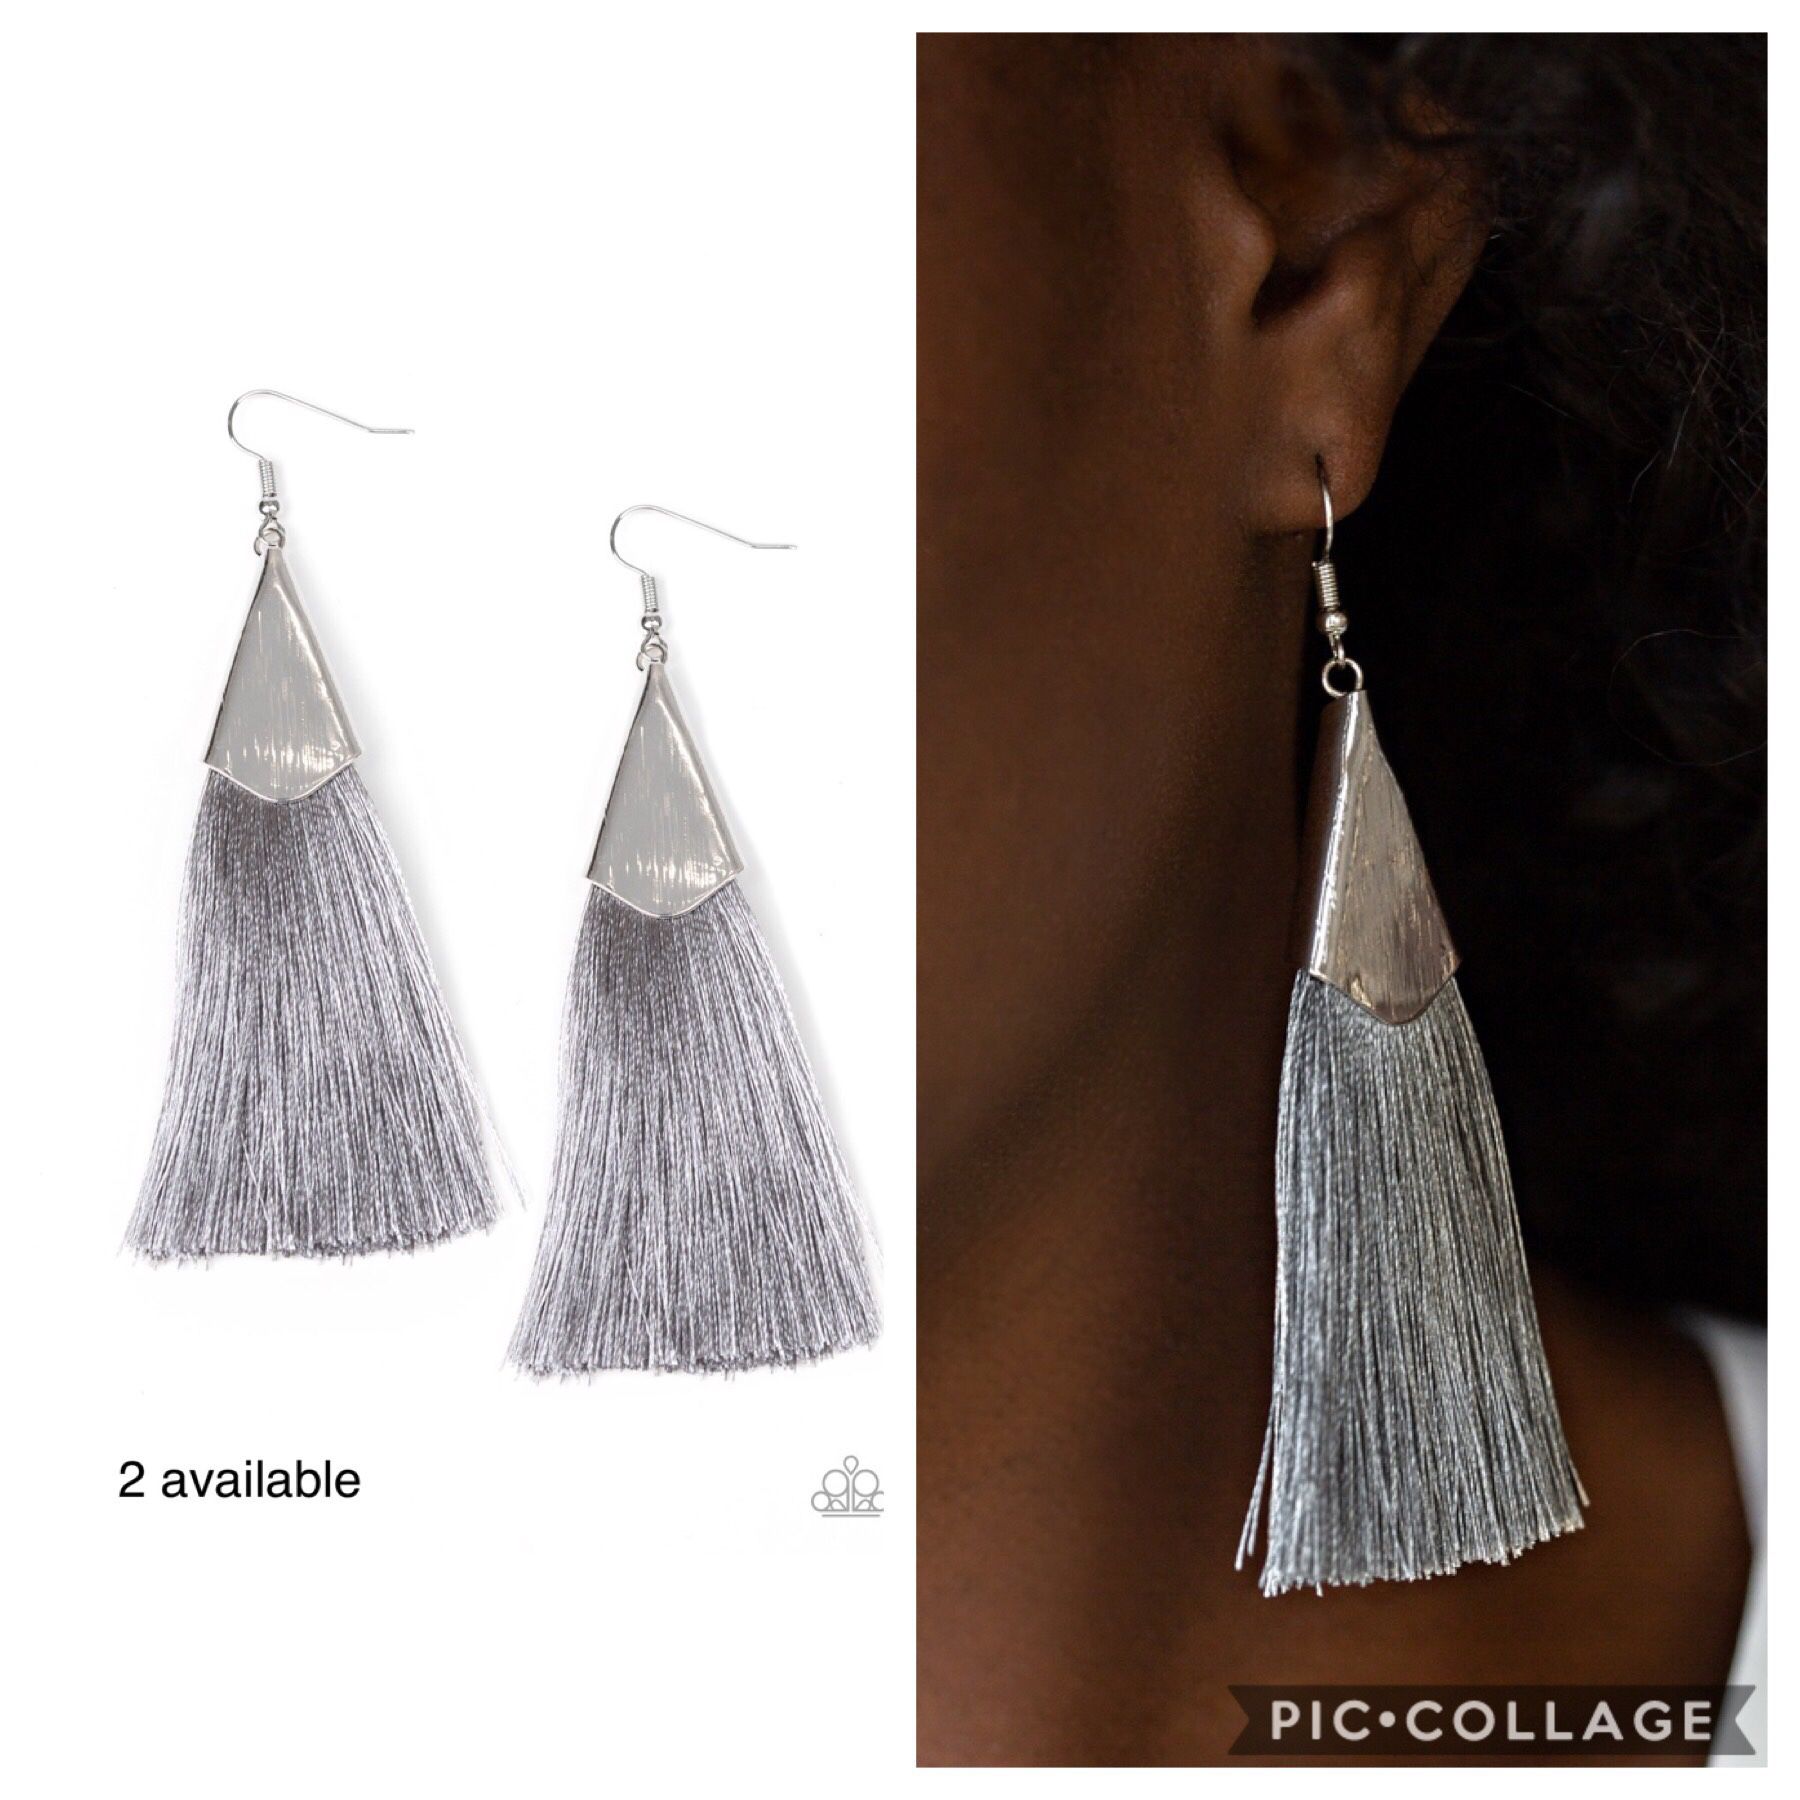 Paparazzi earrings